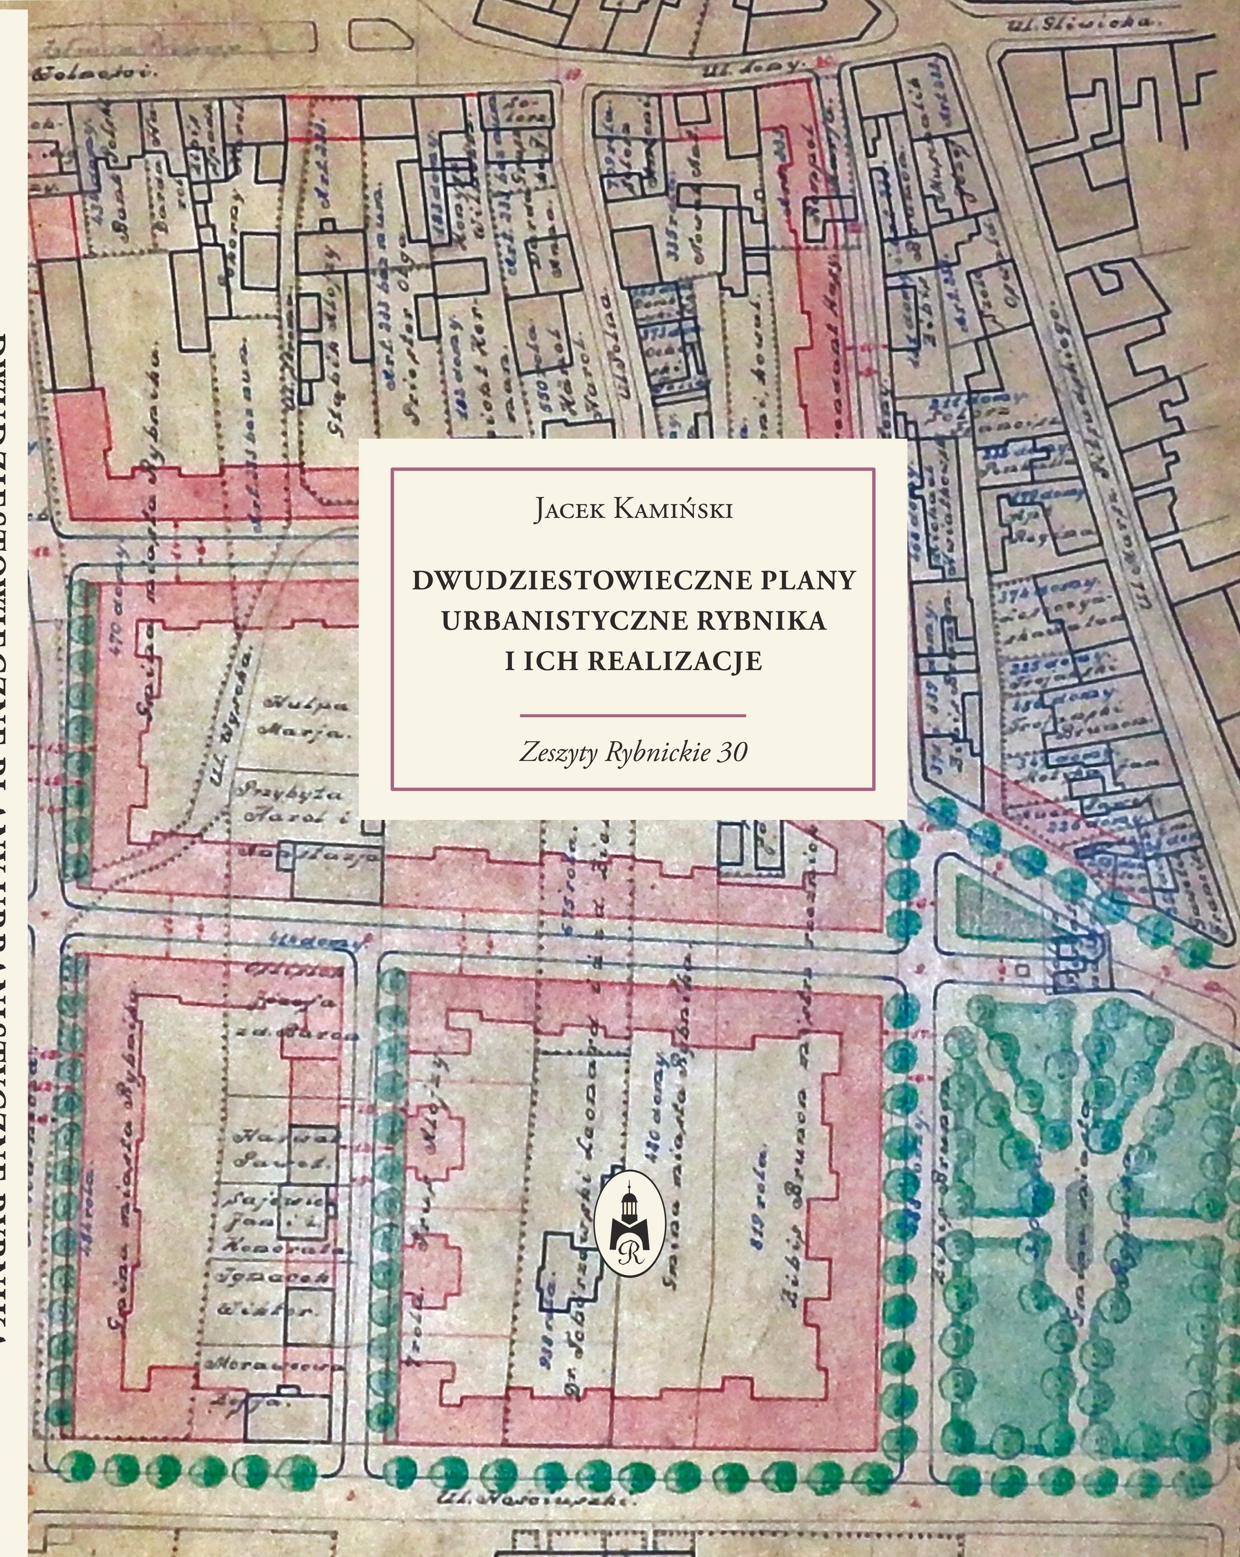 Okładka książki - fragment planu miasta z zaznaczonymi kolorami  zabudową i terenami zielonymi